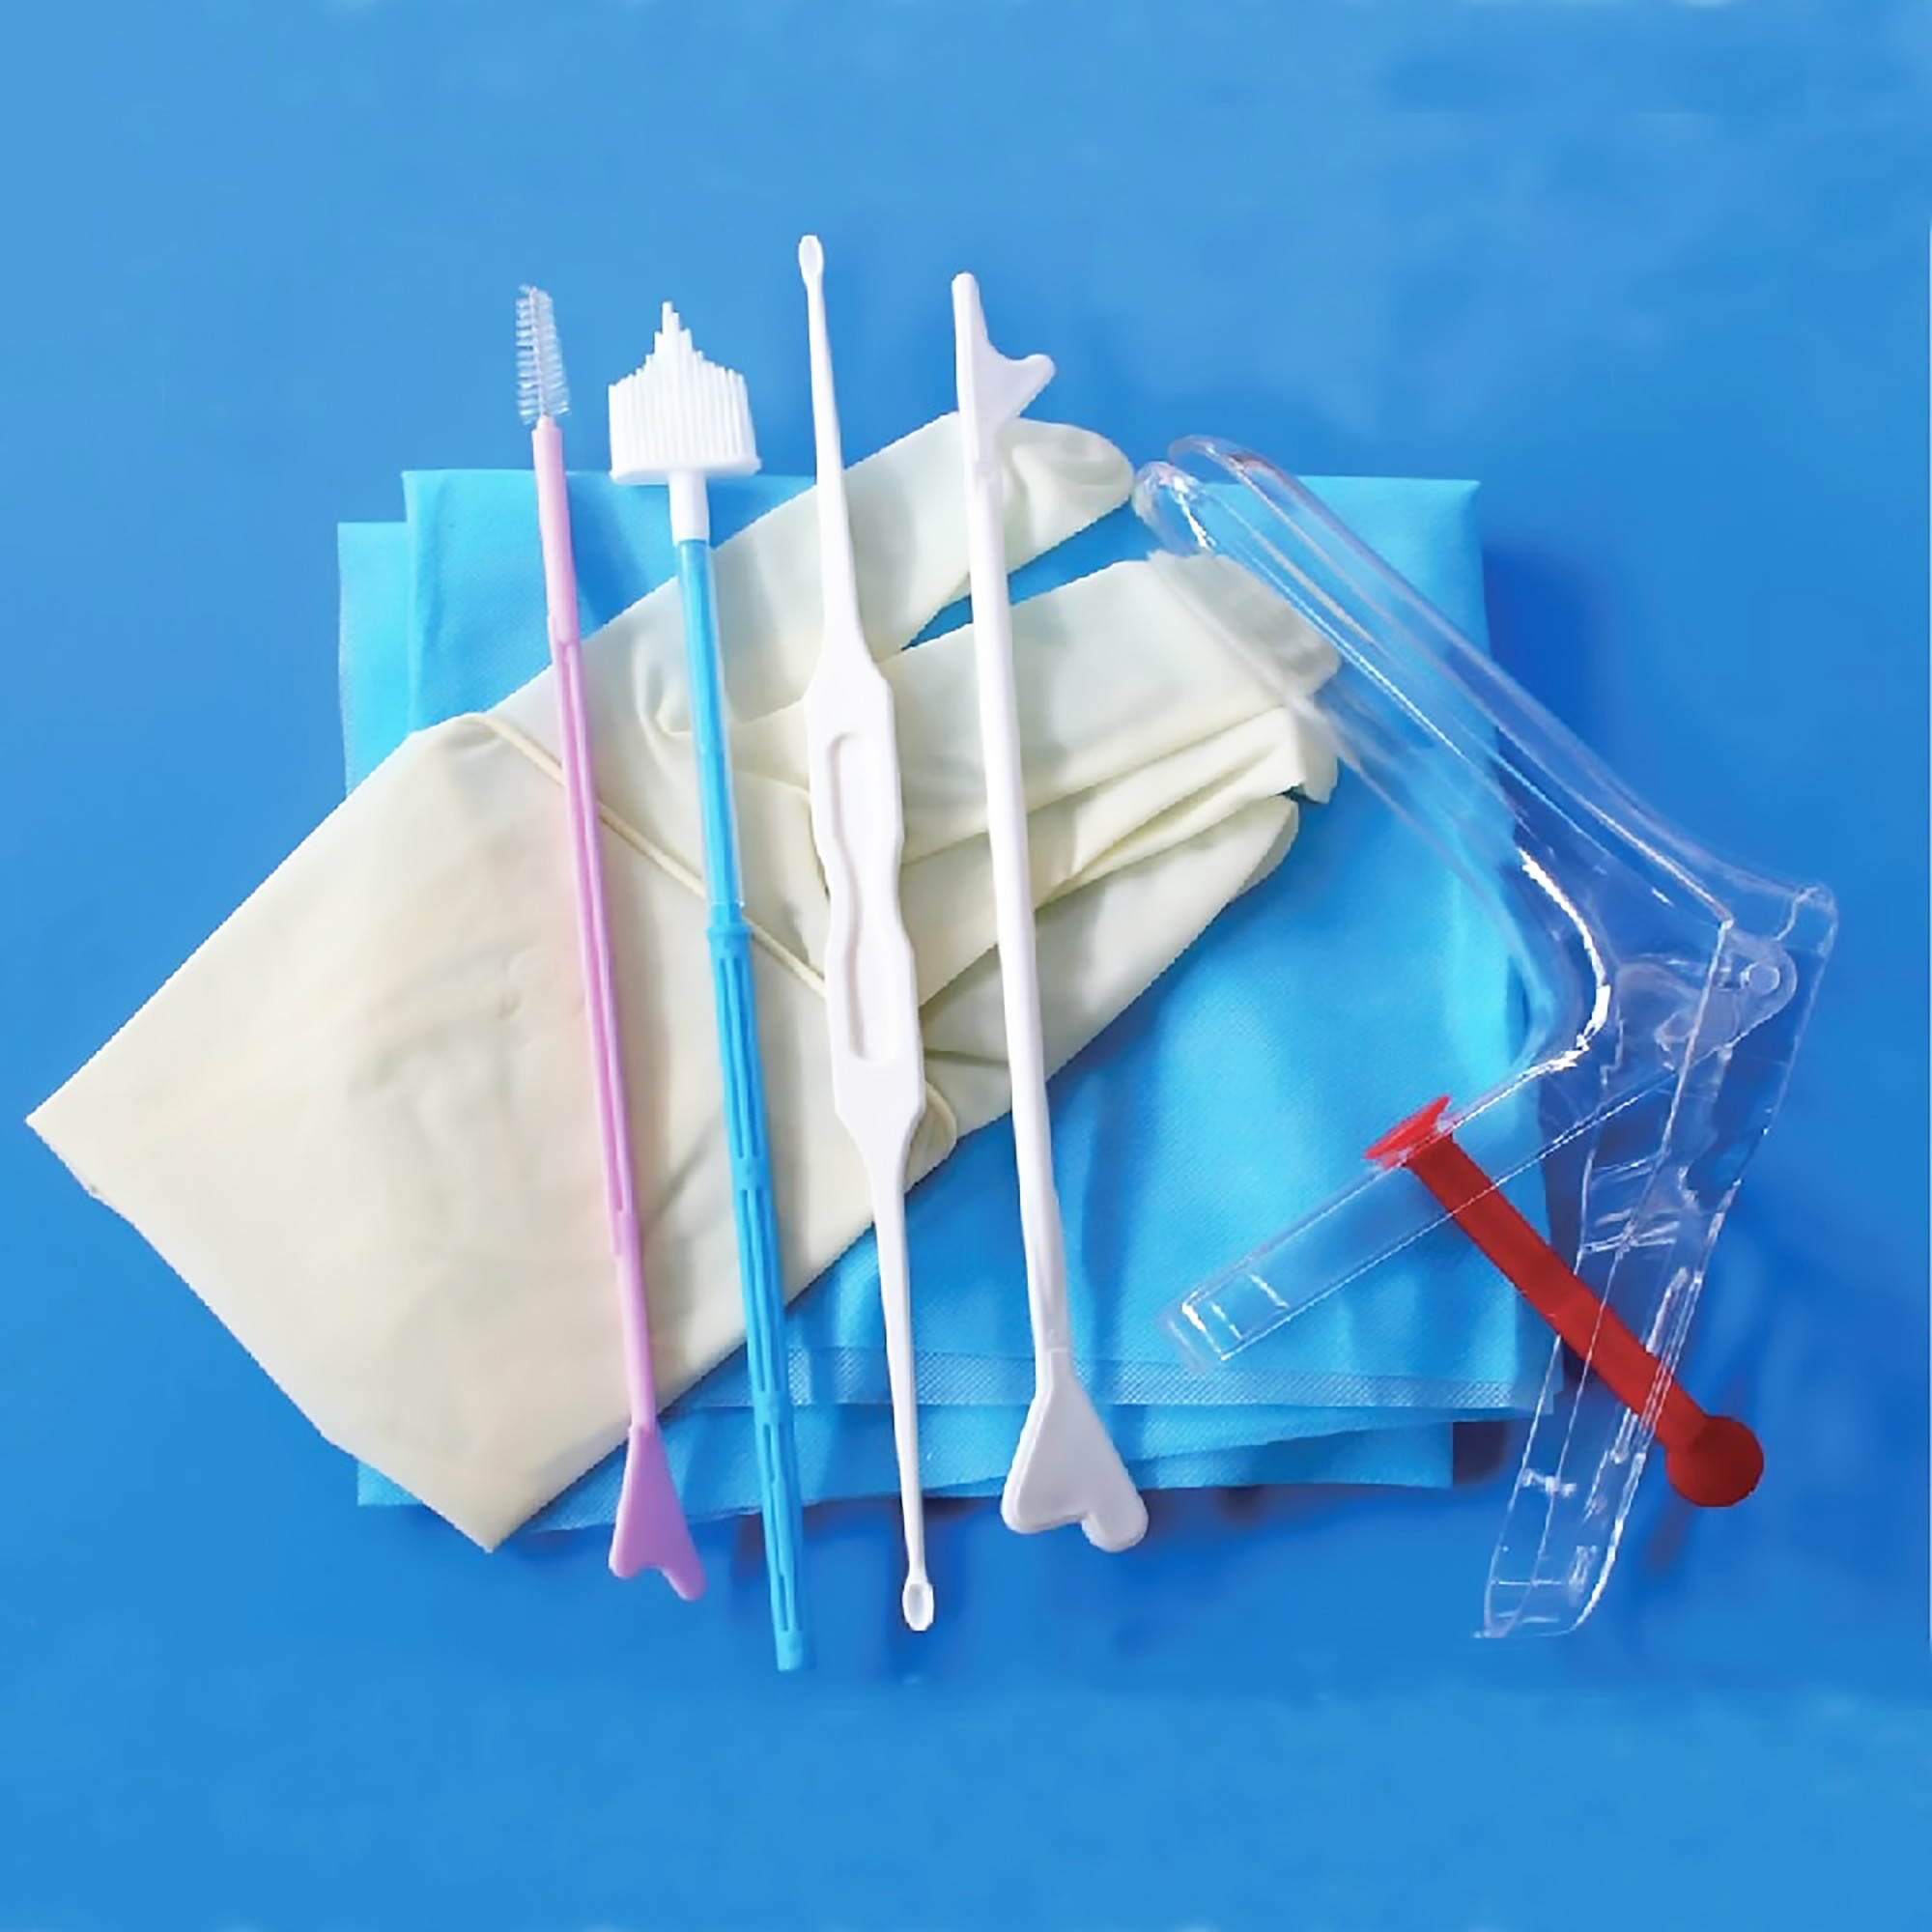 Gynecological examination kits